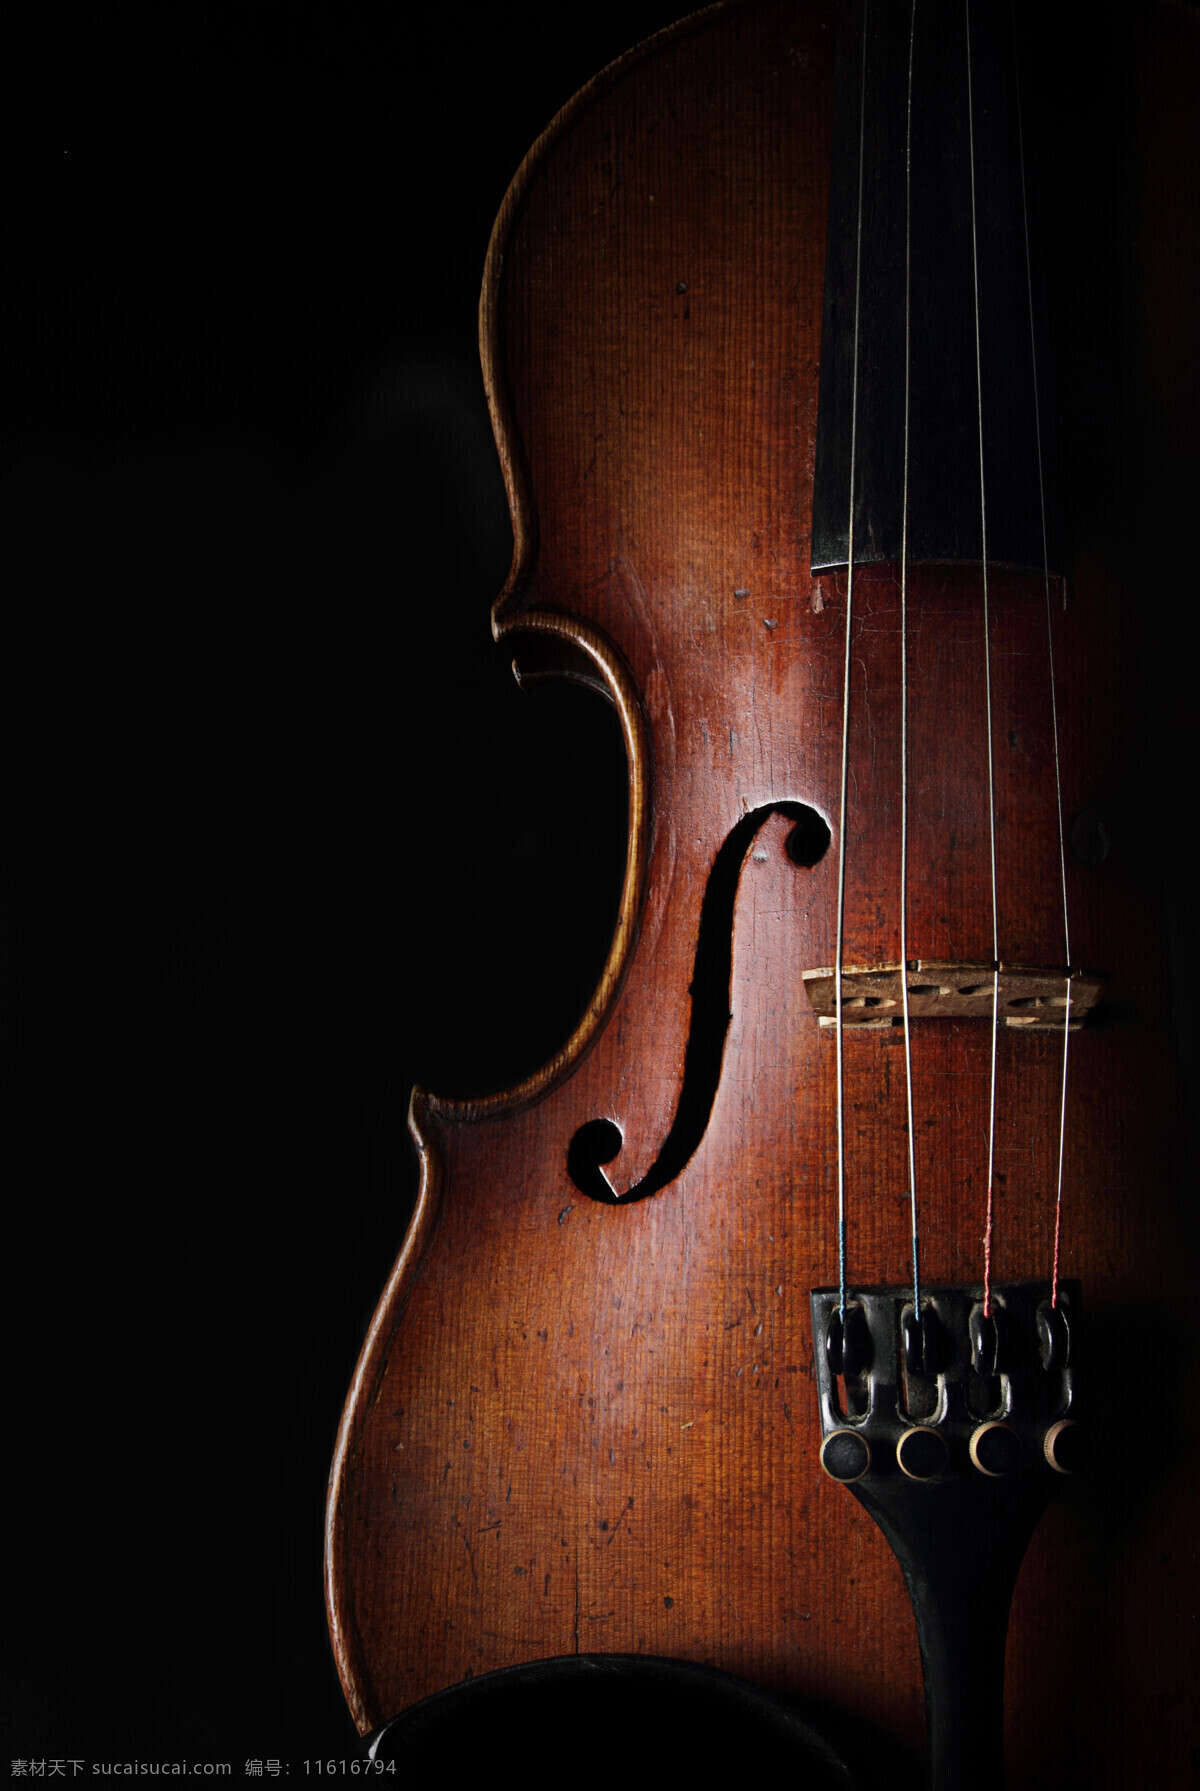 黑色 背景 下 小提琴 音乐器材 乐器 西洋乐器 影音娱乐 生活百科